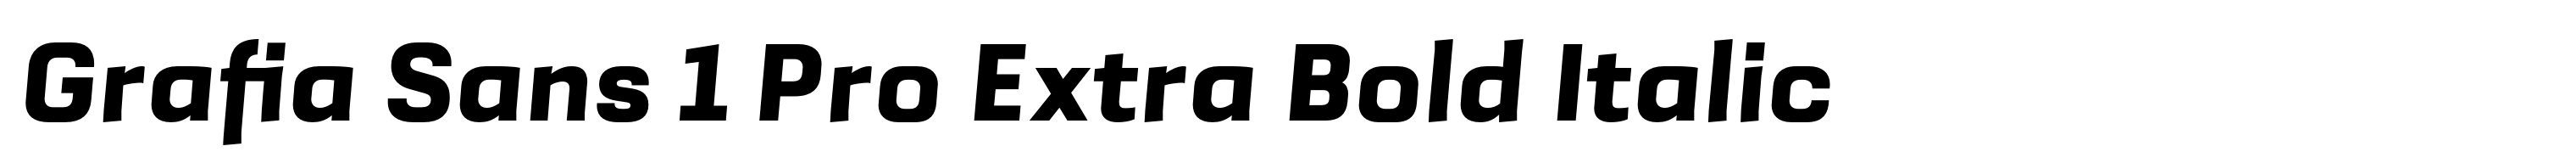 Grafia Sans 1 Pro Extra Bold Italic